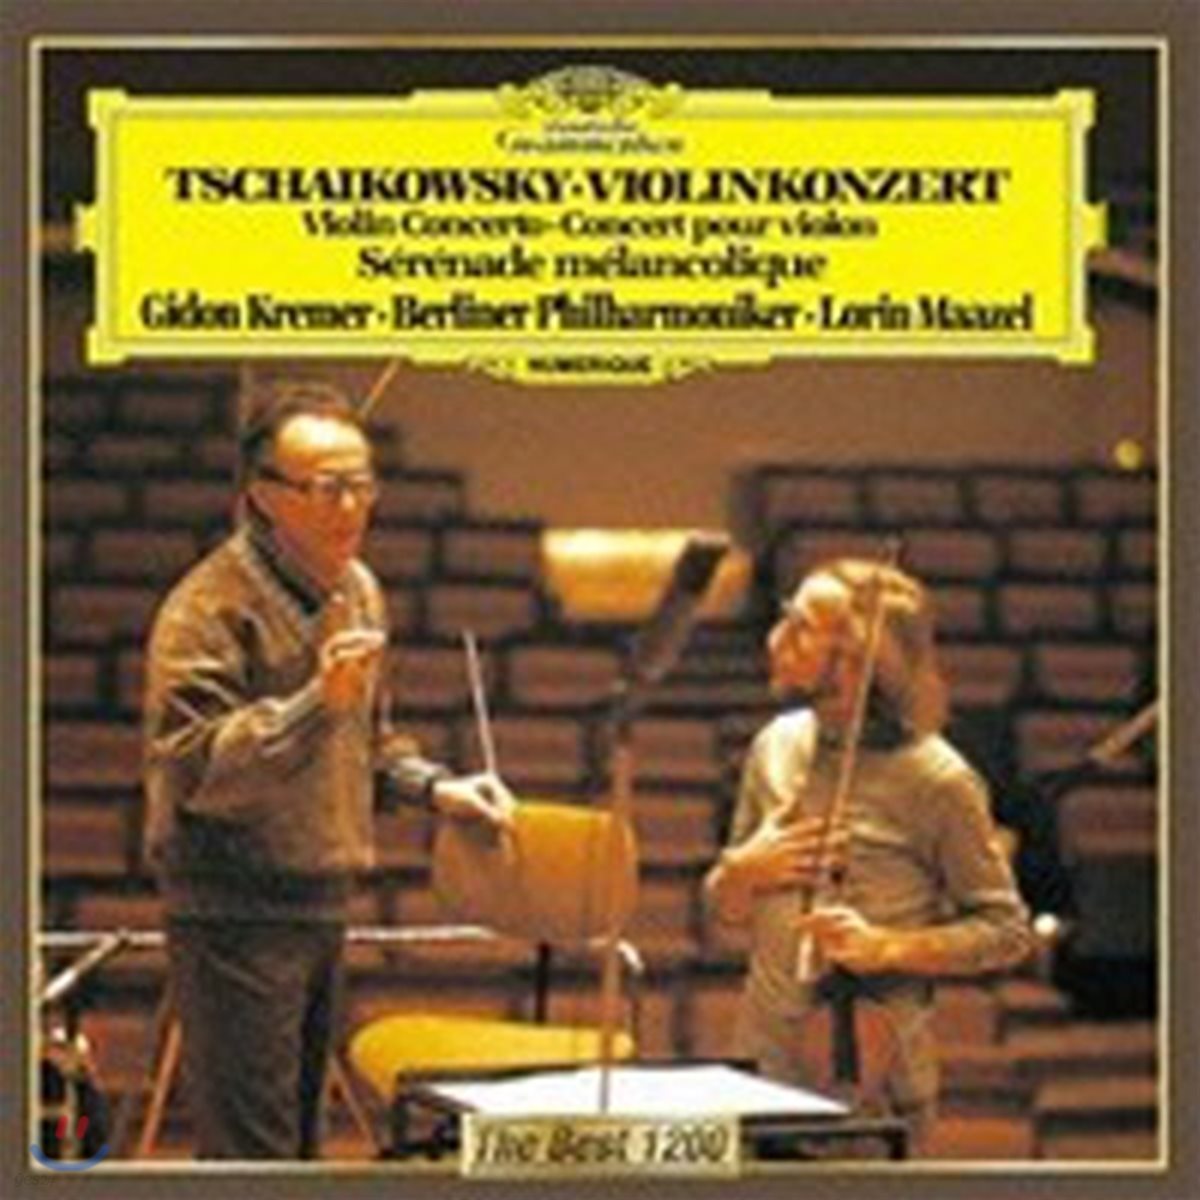 [중고] Gidon Kremer / Tchaikovsky : Violin Concerto, Serenade Melancolique (cdg002)